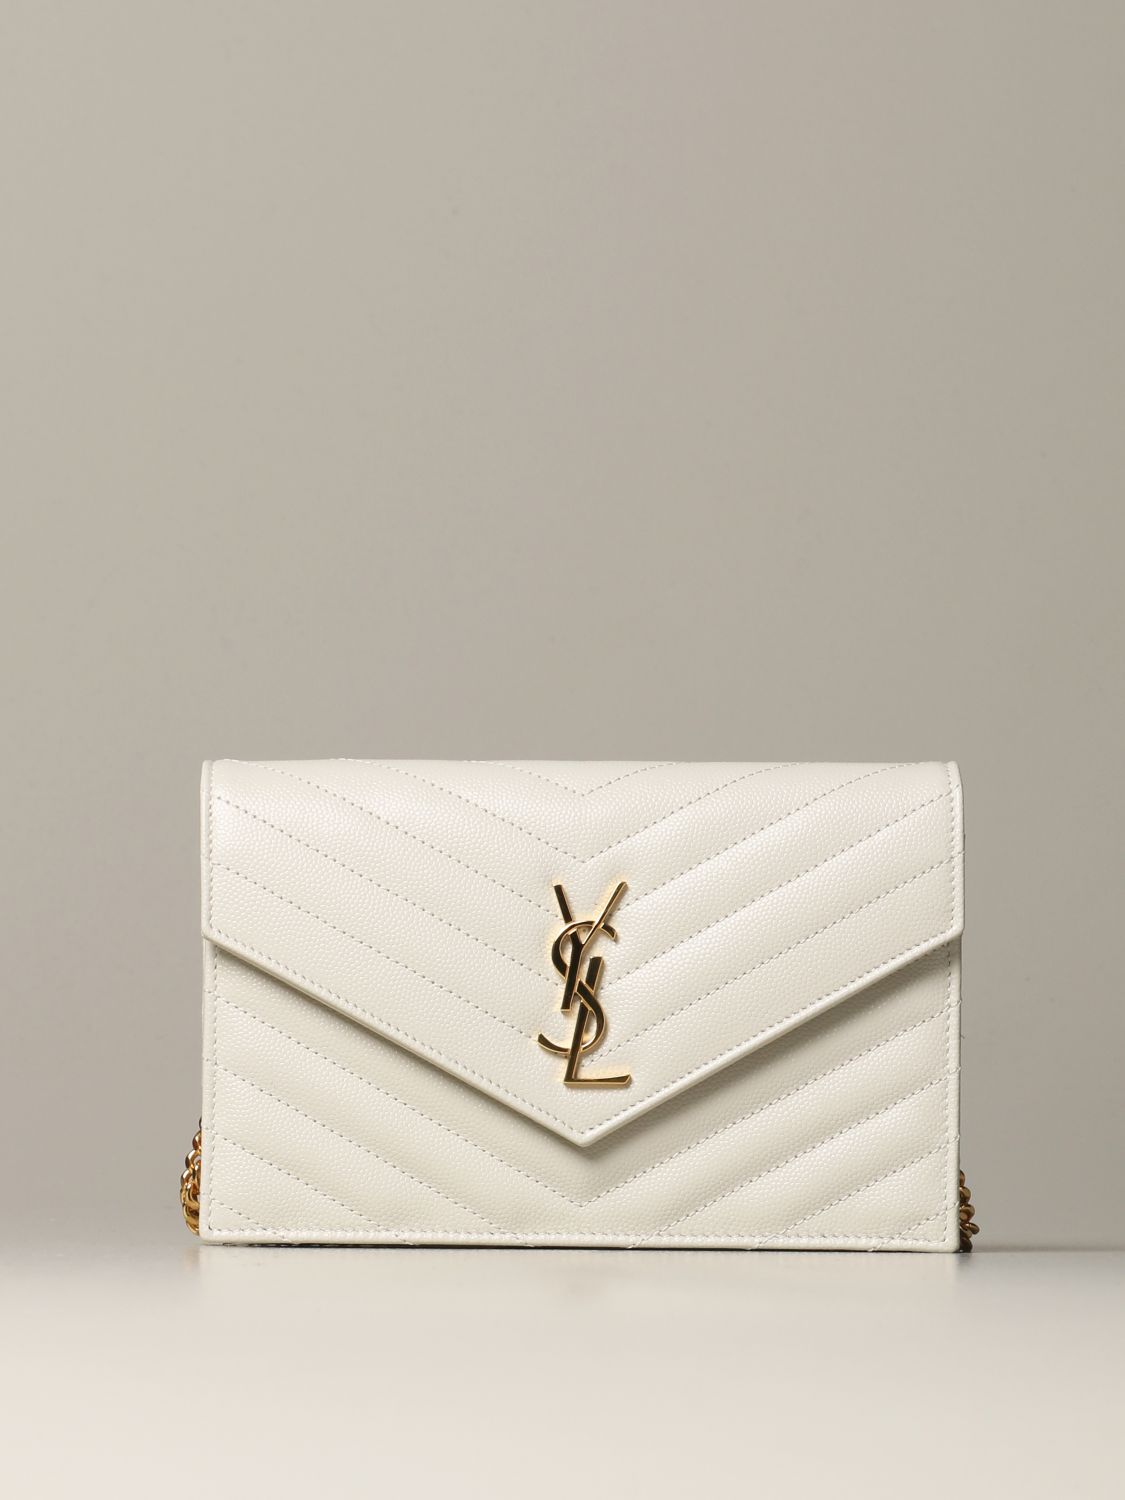 Saint Laurent Women's Large Envelope Monogram Matelassé Leather Shoulder Bag - Bianco Cream